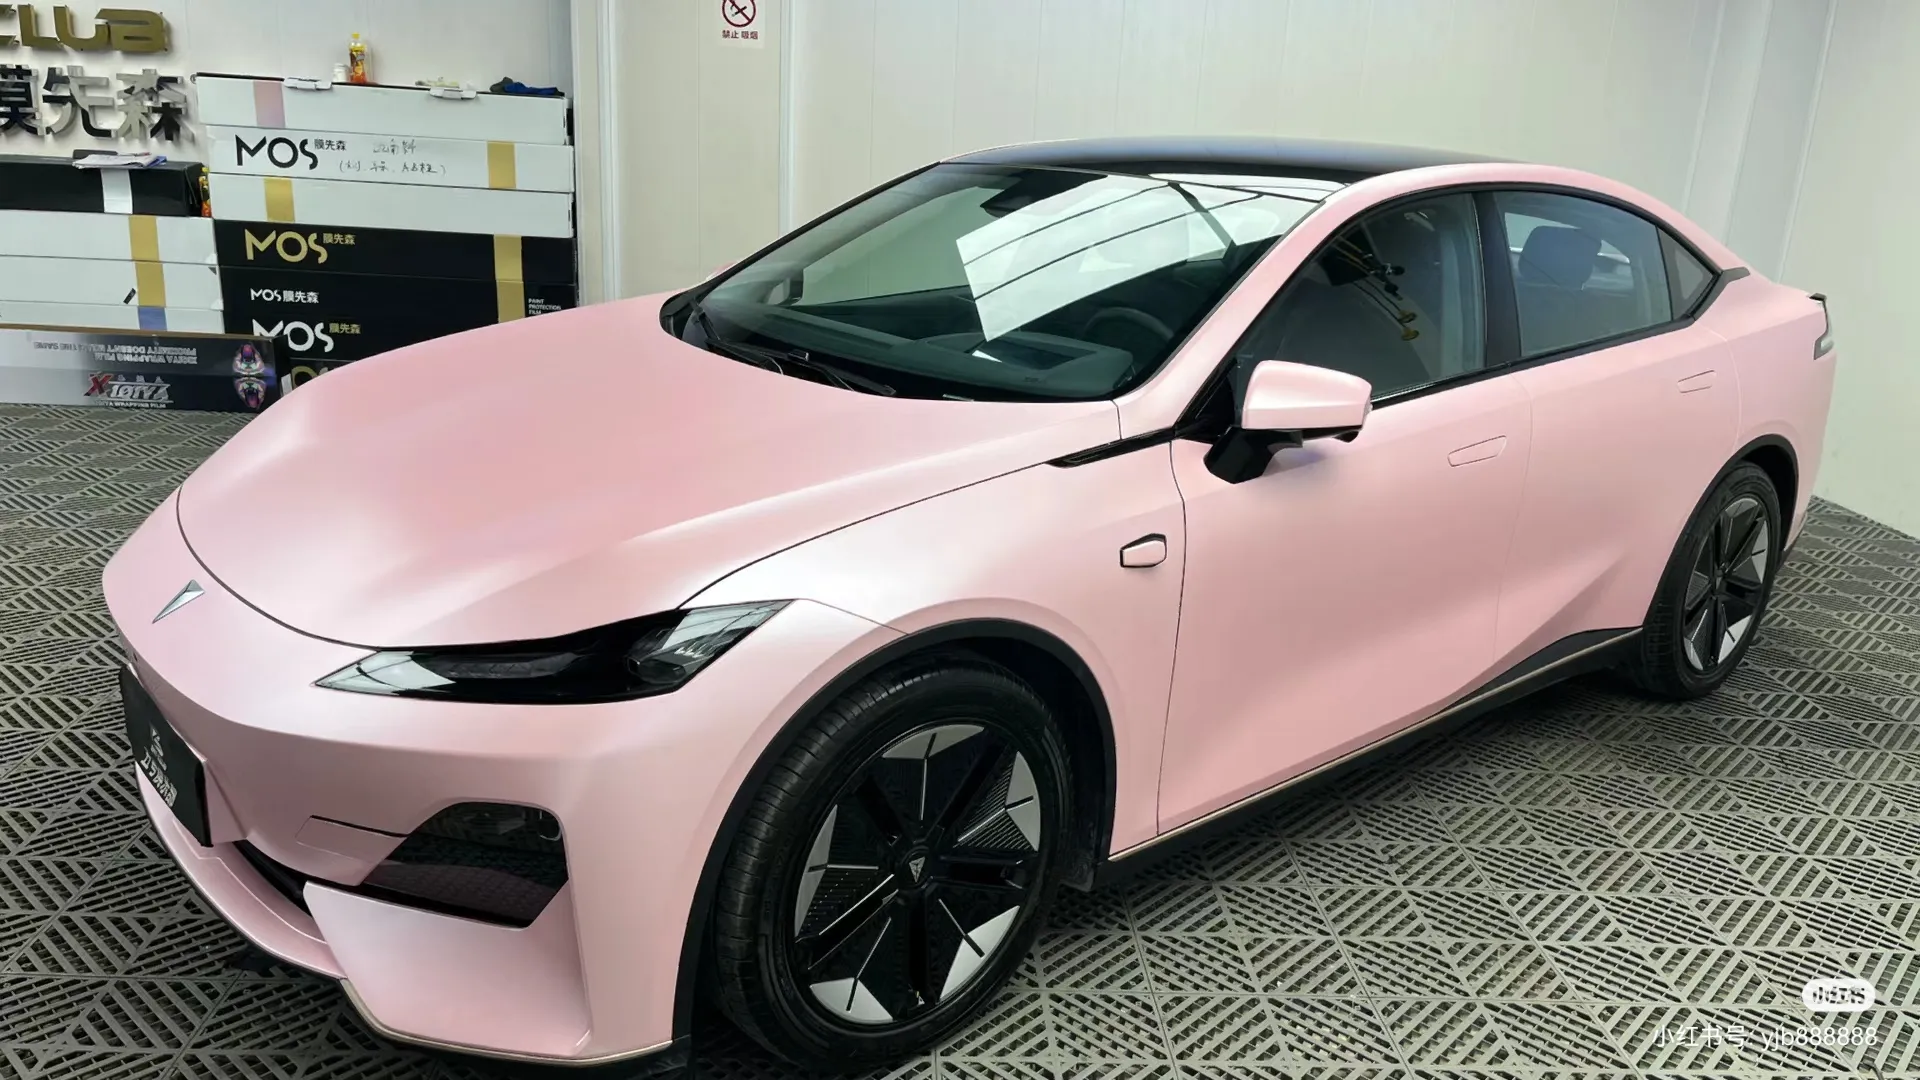 Metallic Pink Car Wrap